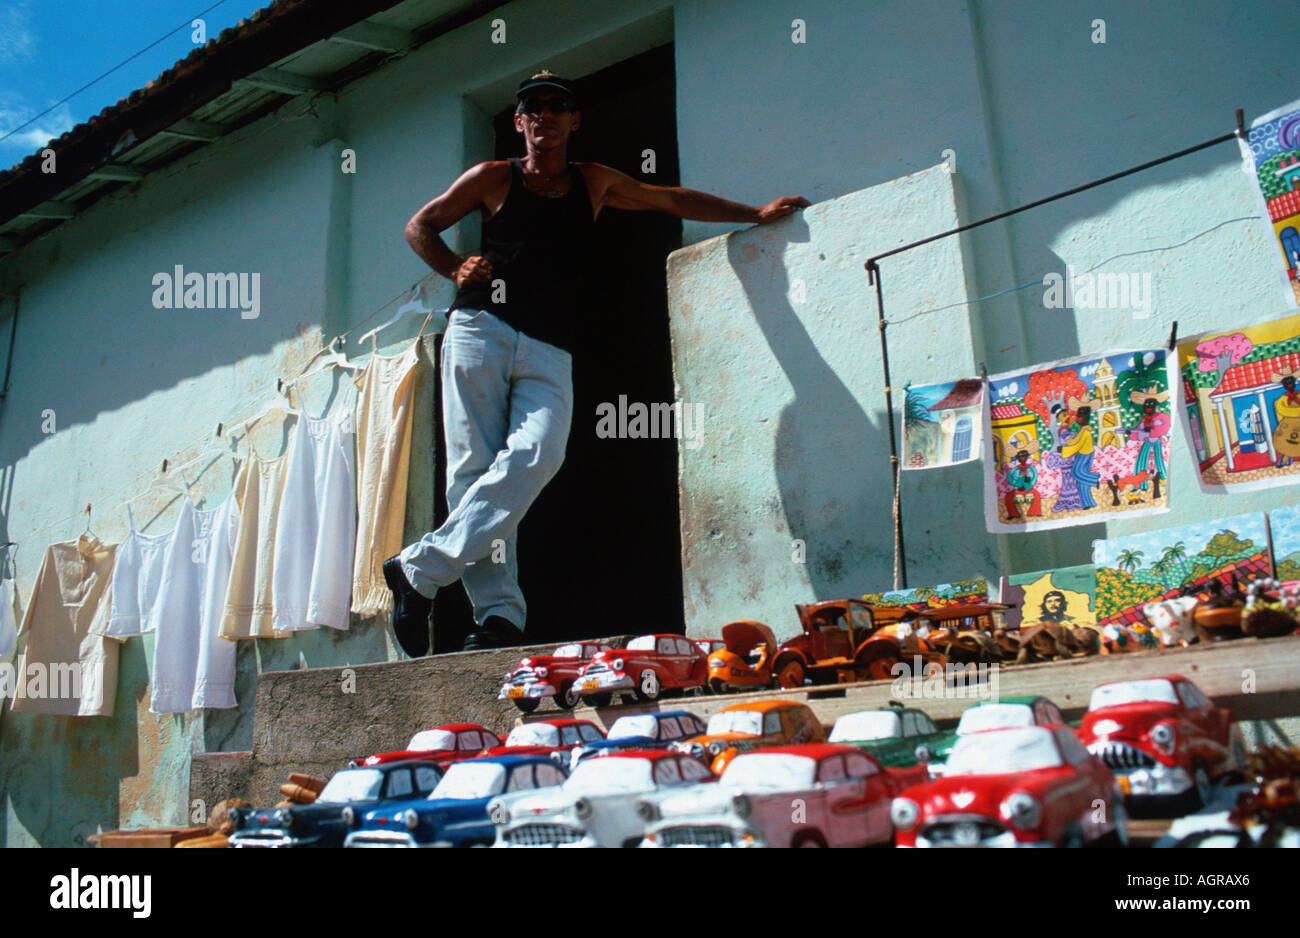 Man at stall / Trinidad / Mann an Verkaufsstand Stock Photo